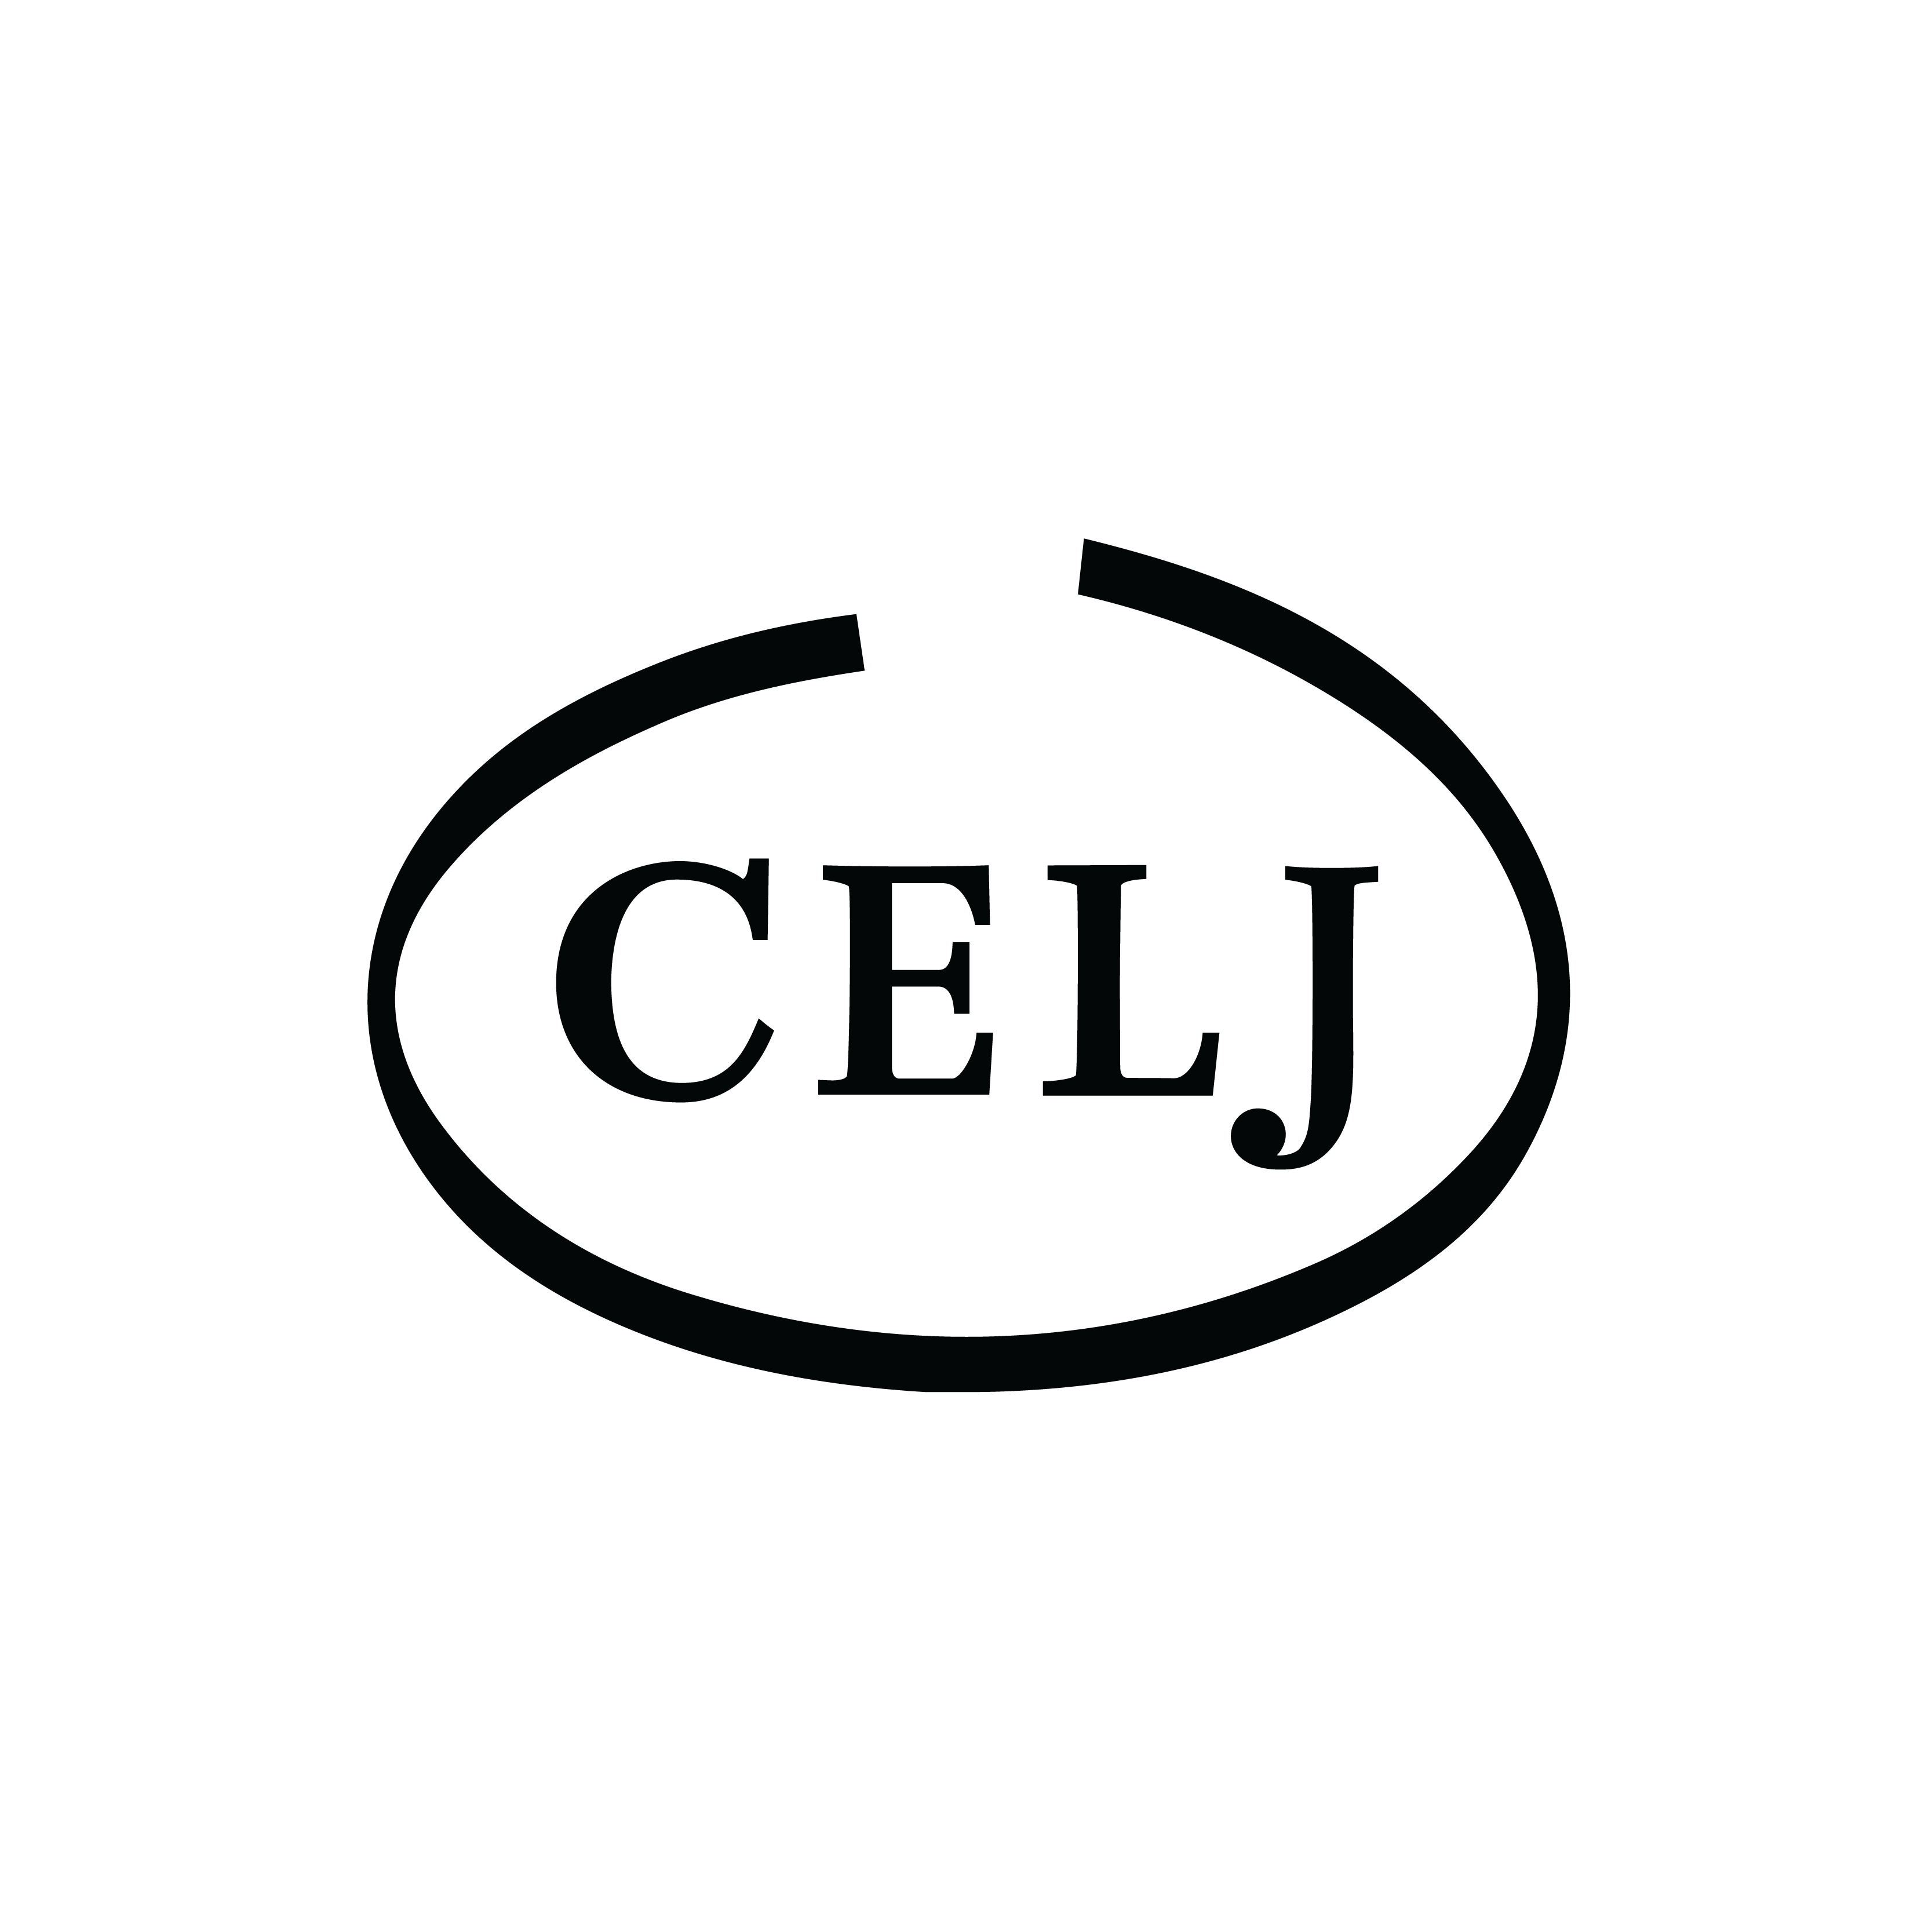 Member of CELJ